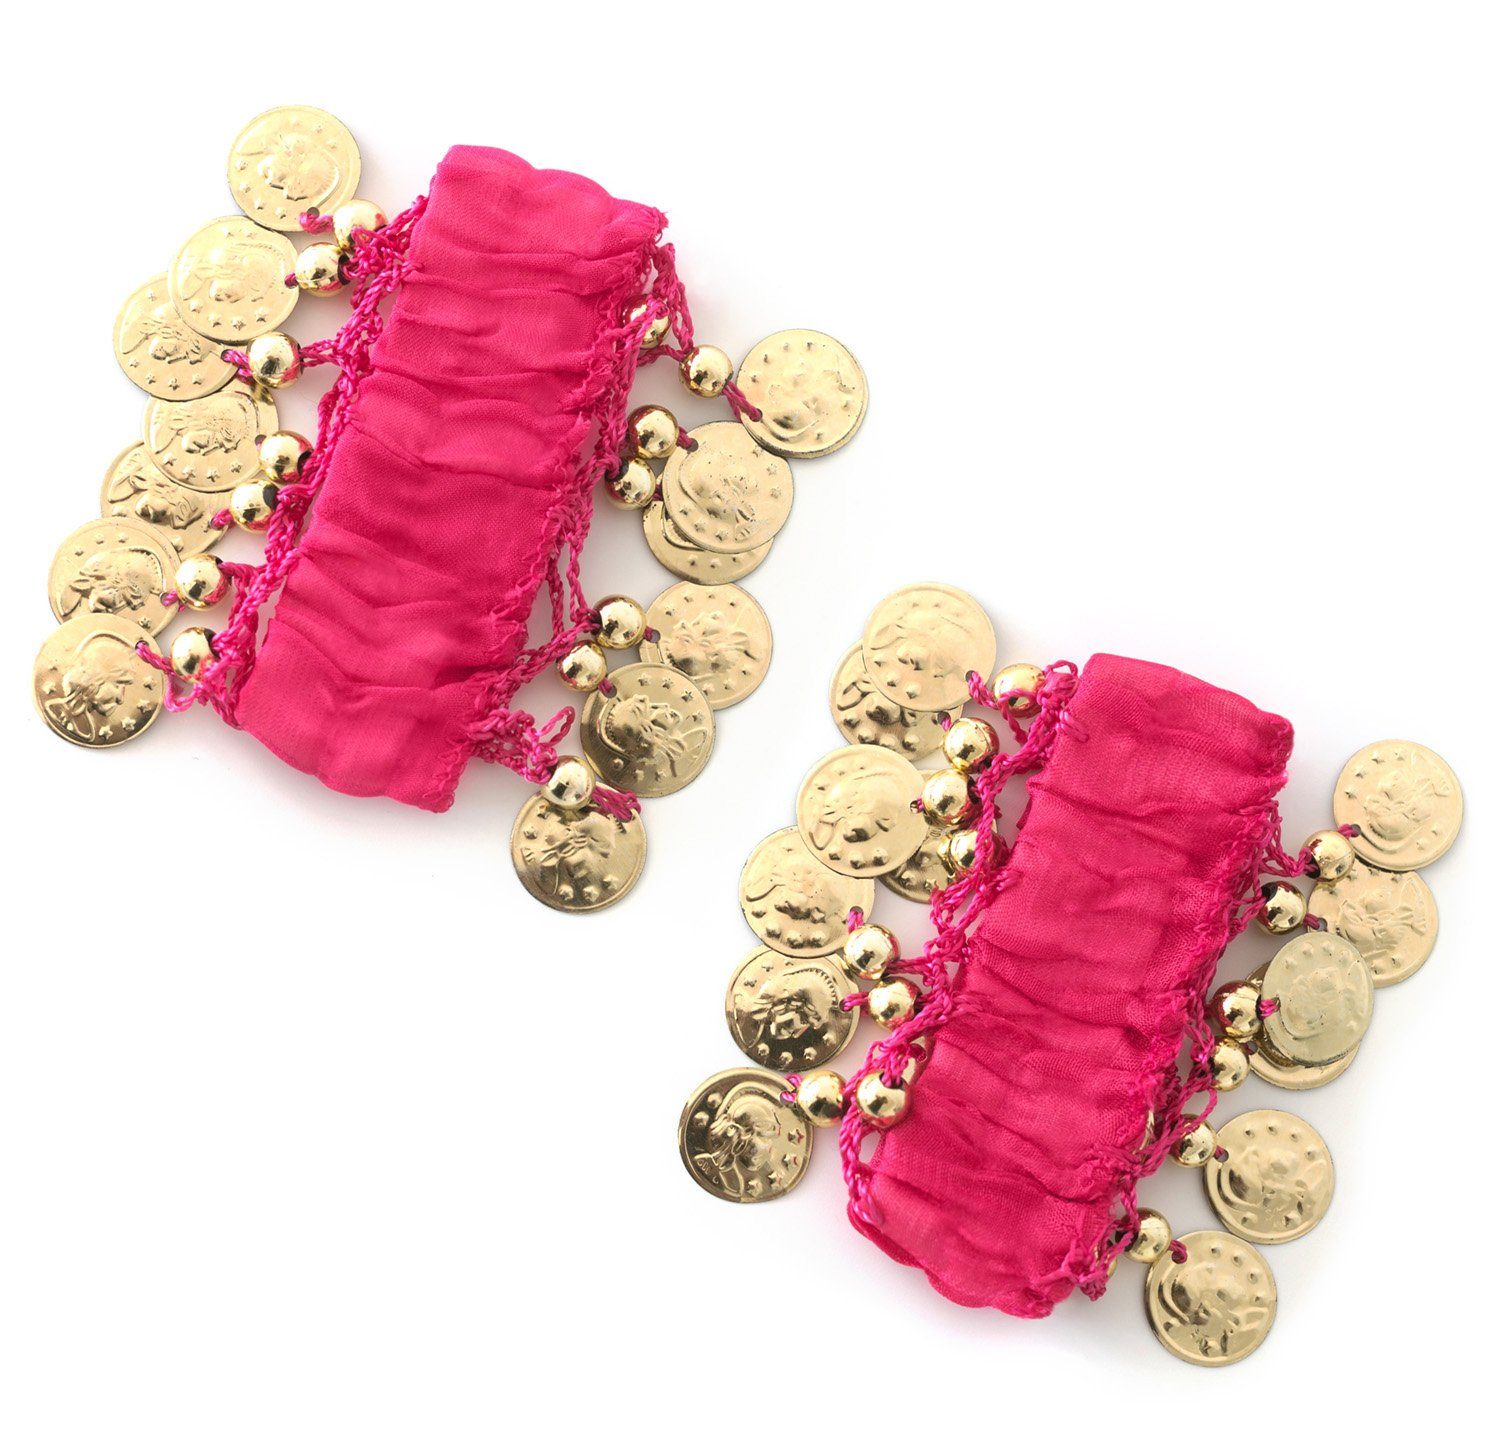 MyBeautyworld24 Armband Handkette (Paar) Armbänder Dance pink Belly Fasching